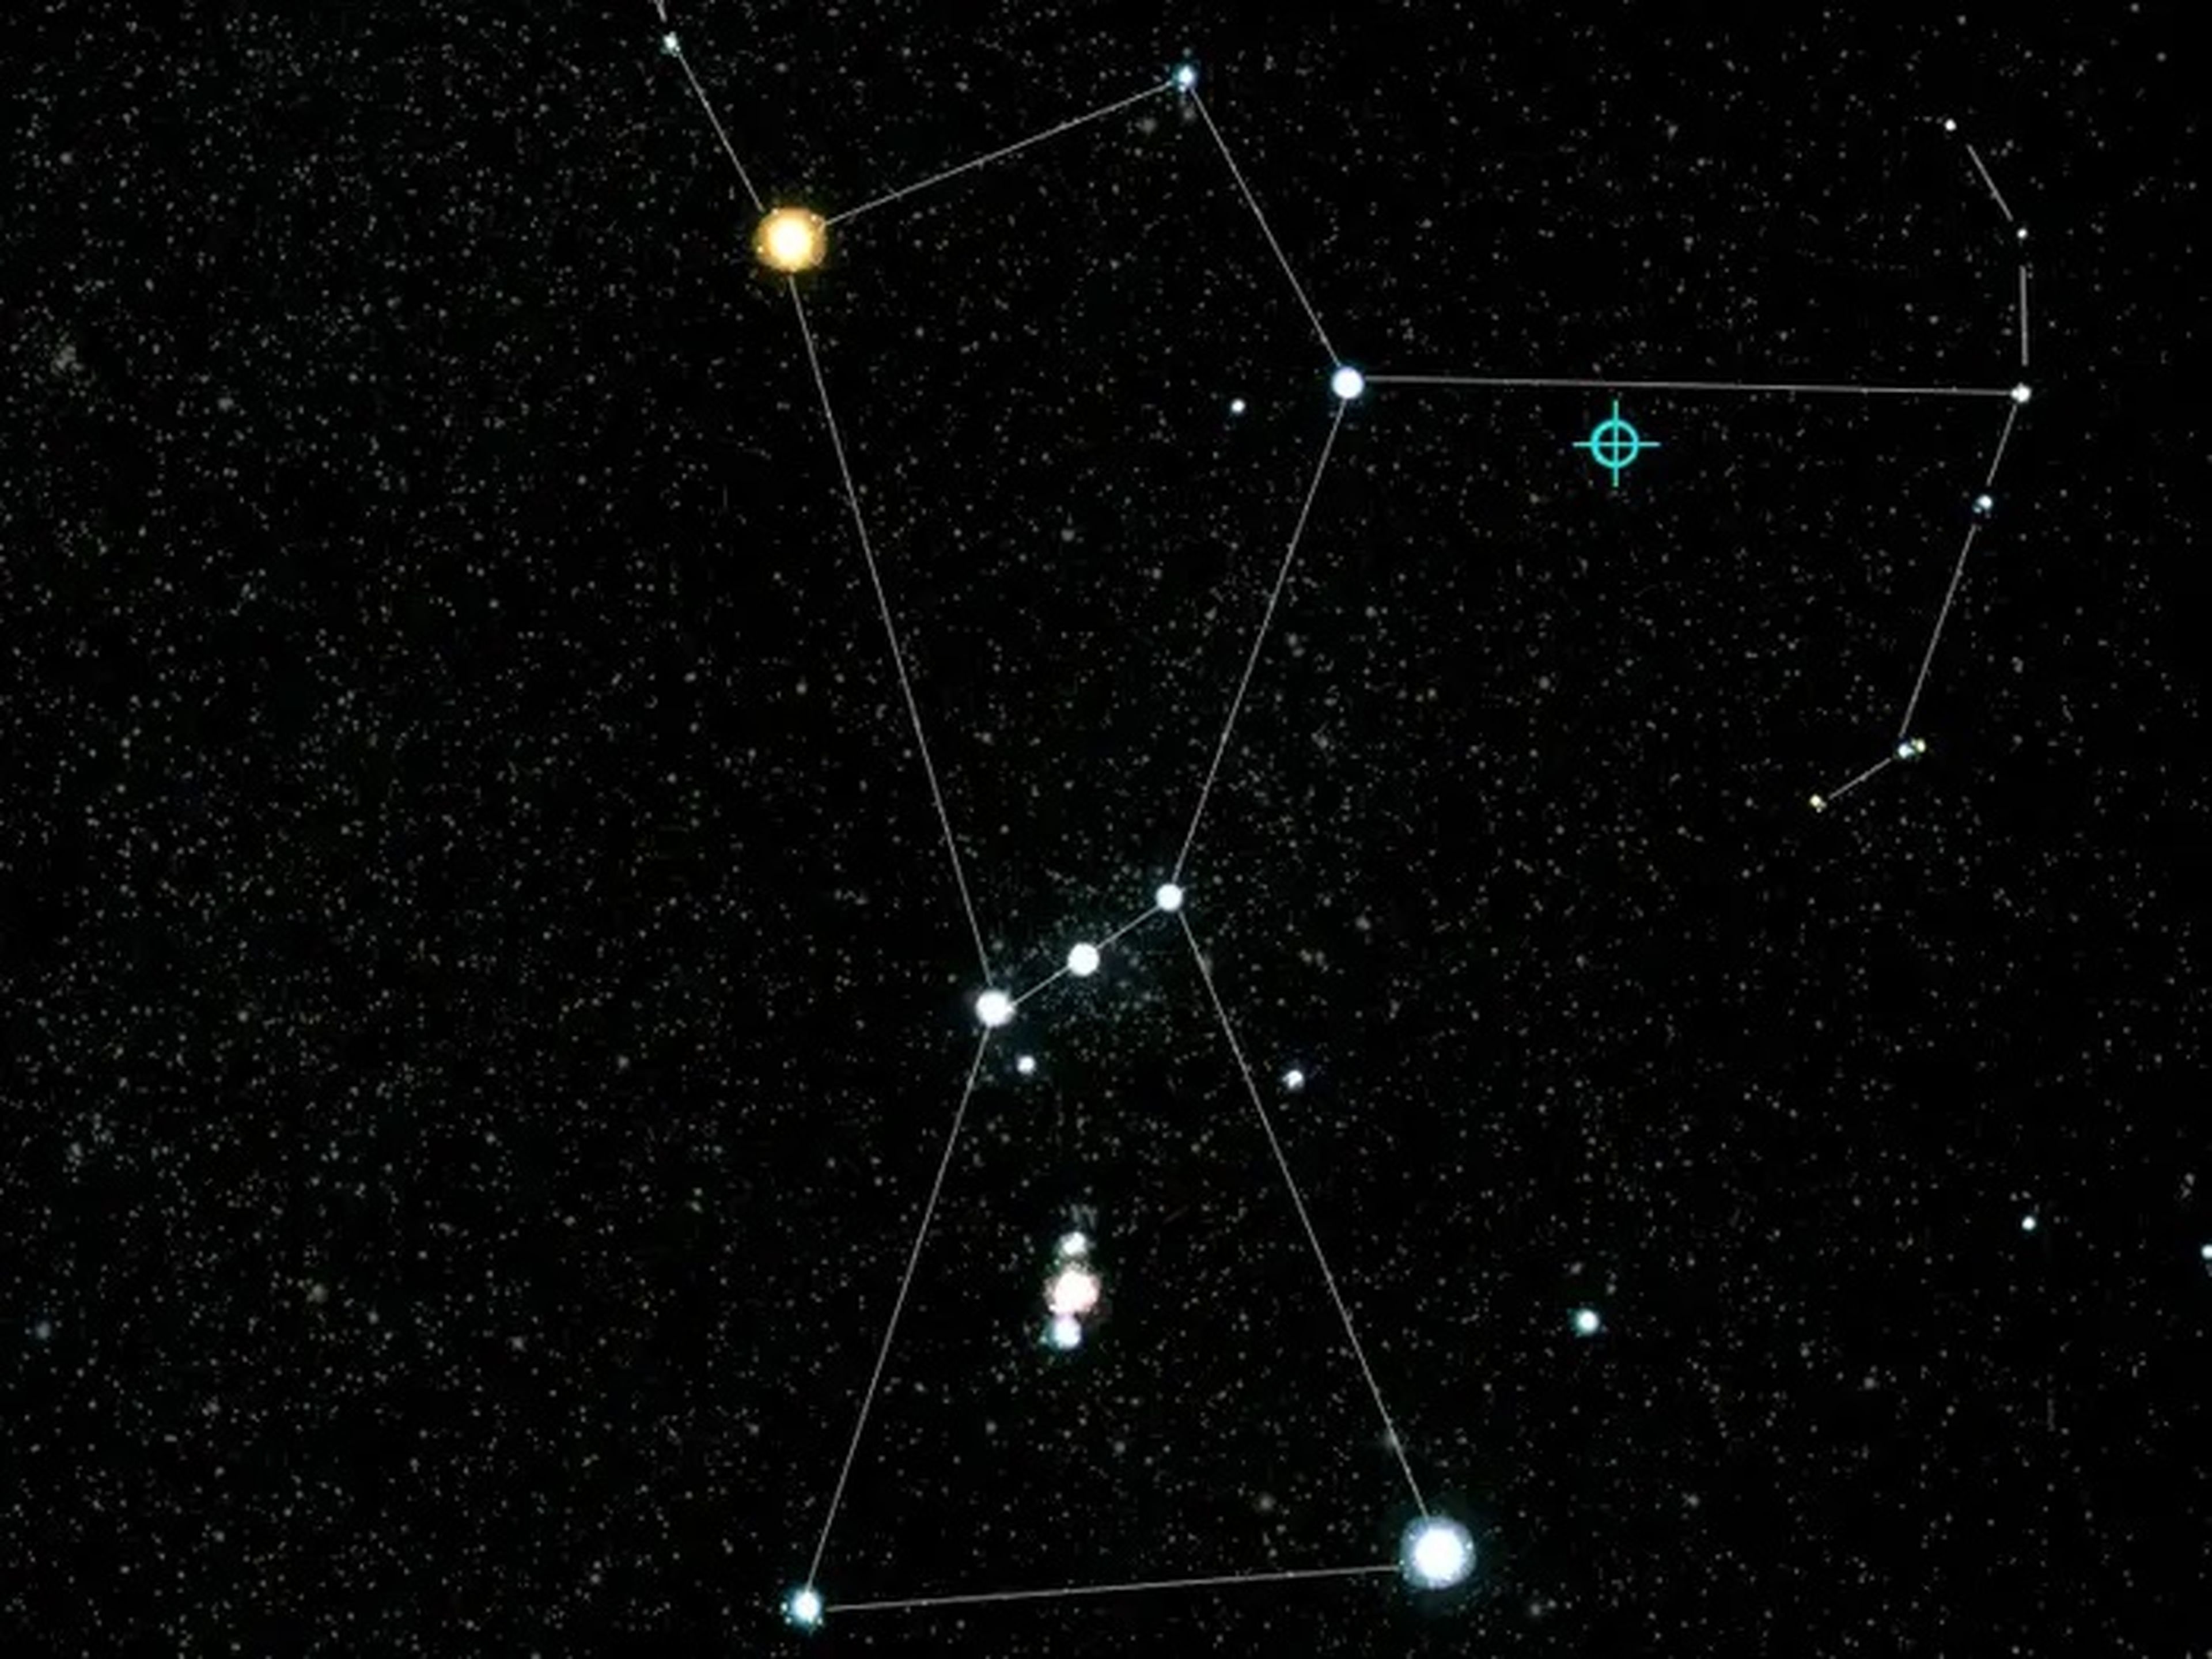 La constelación de Orión es fácil de ver en el cielo nocturno. Basta con buscar las tres estrellas brillantes que forman el cinturón de Orión.